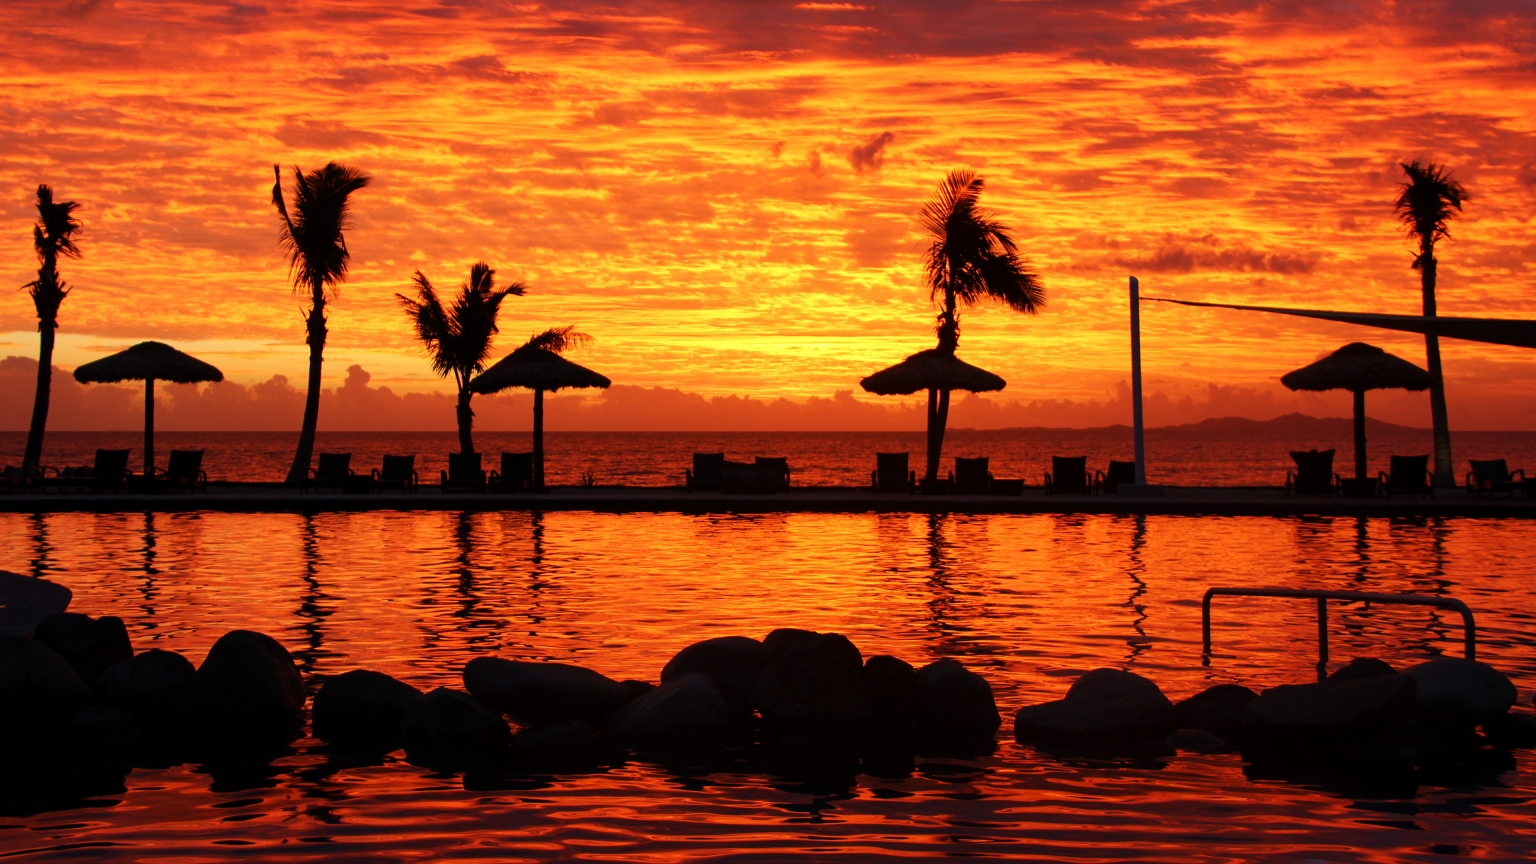 Fijian Sunset for 1536 x 864 HDTV resolution